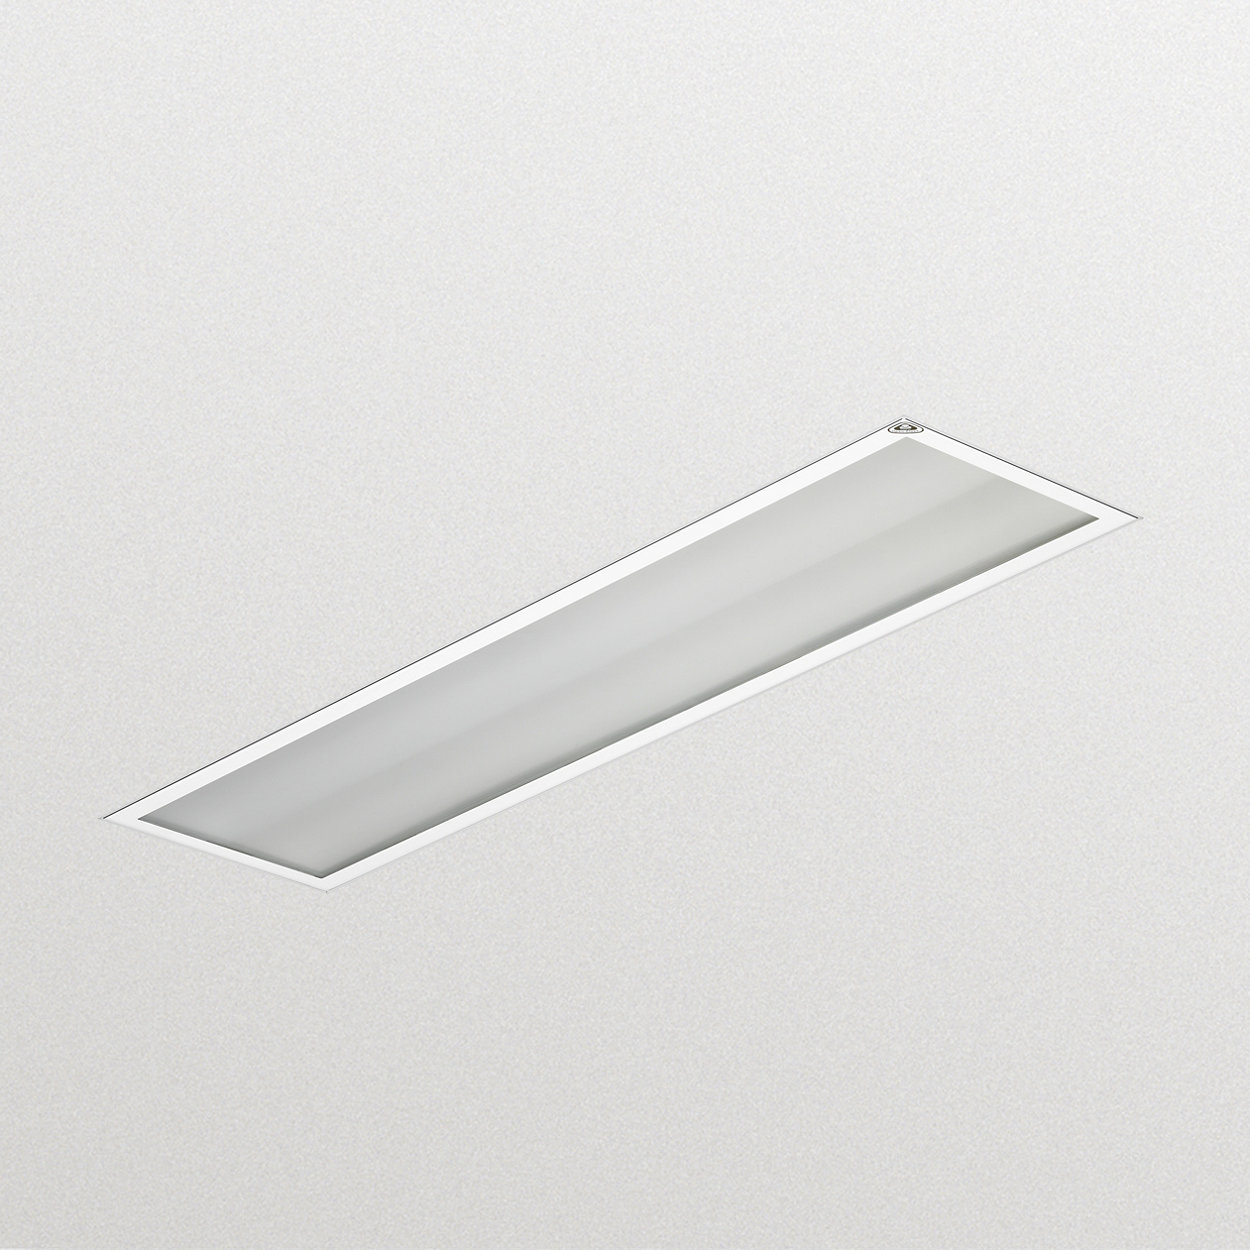 LED Reinraum – hygienisch und effizient